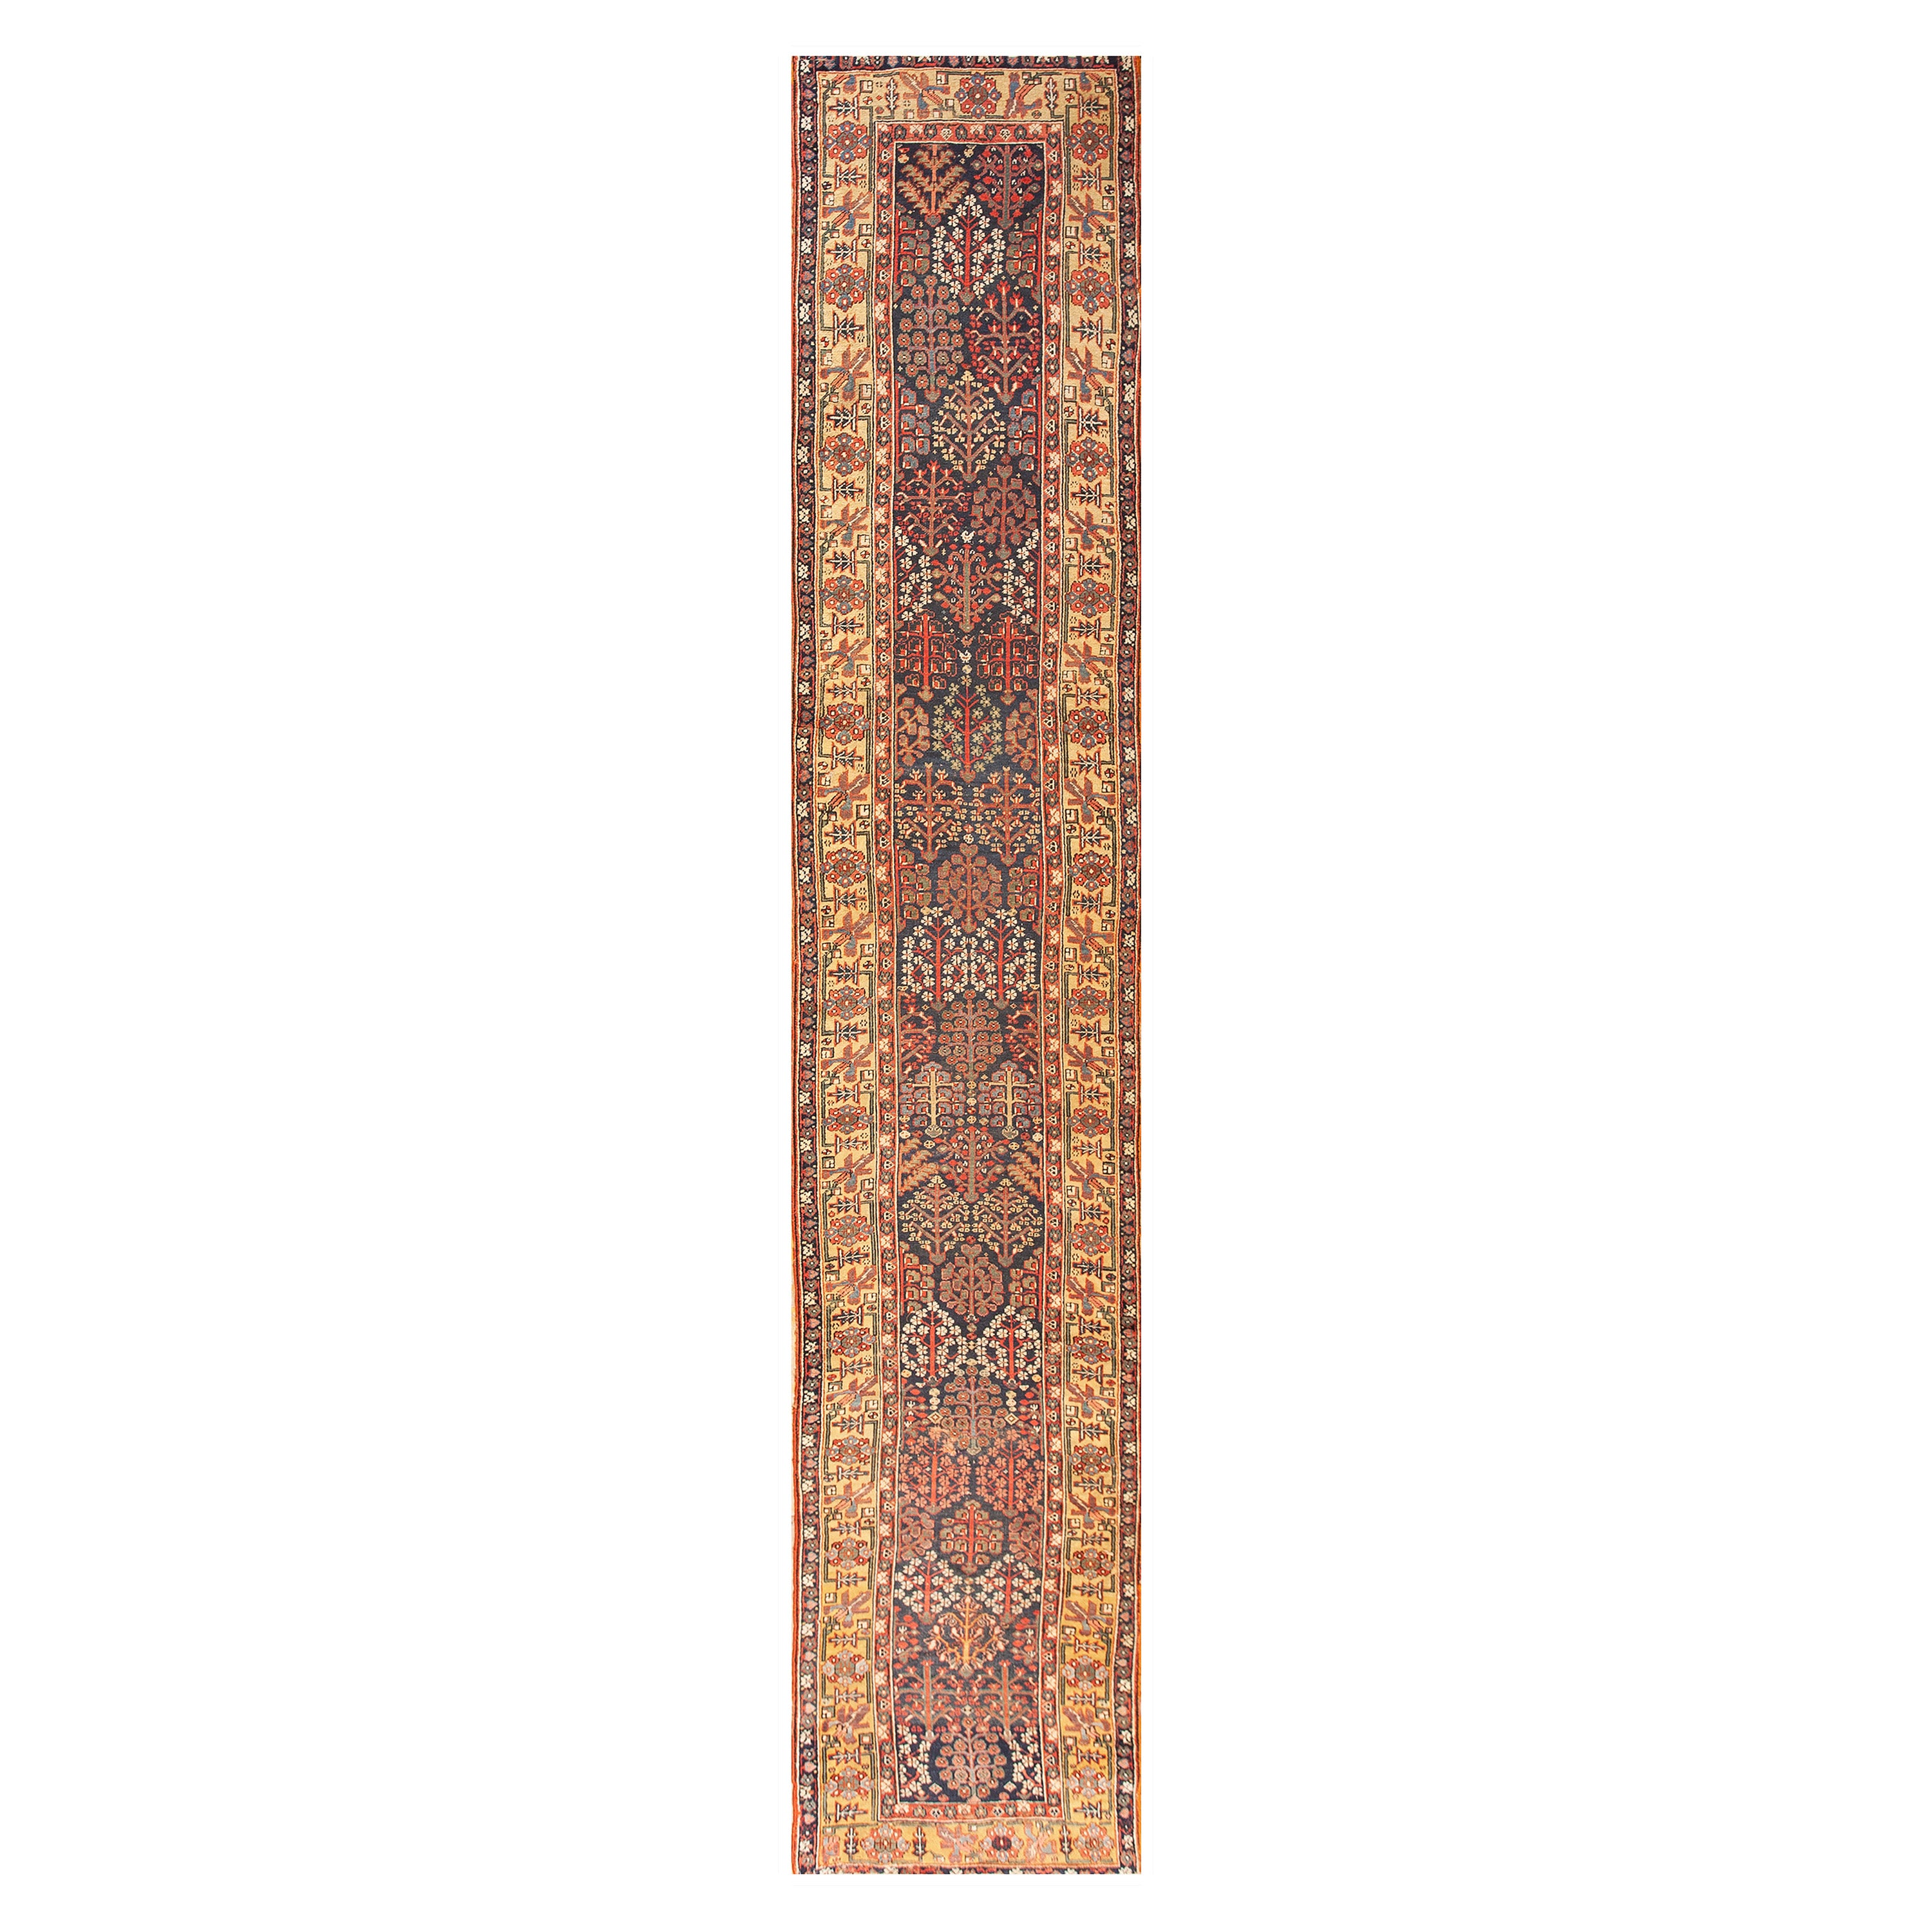 Mid 19th Century W. Persian Kurdish Shrub Runner Carpet (3' x 14'6'' - 90 x 443)